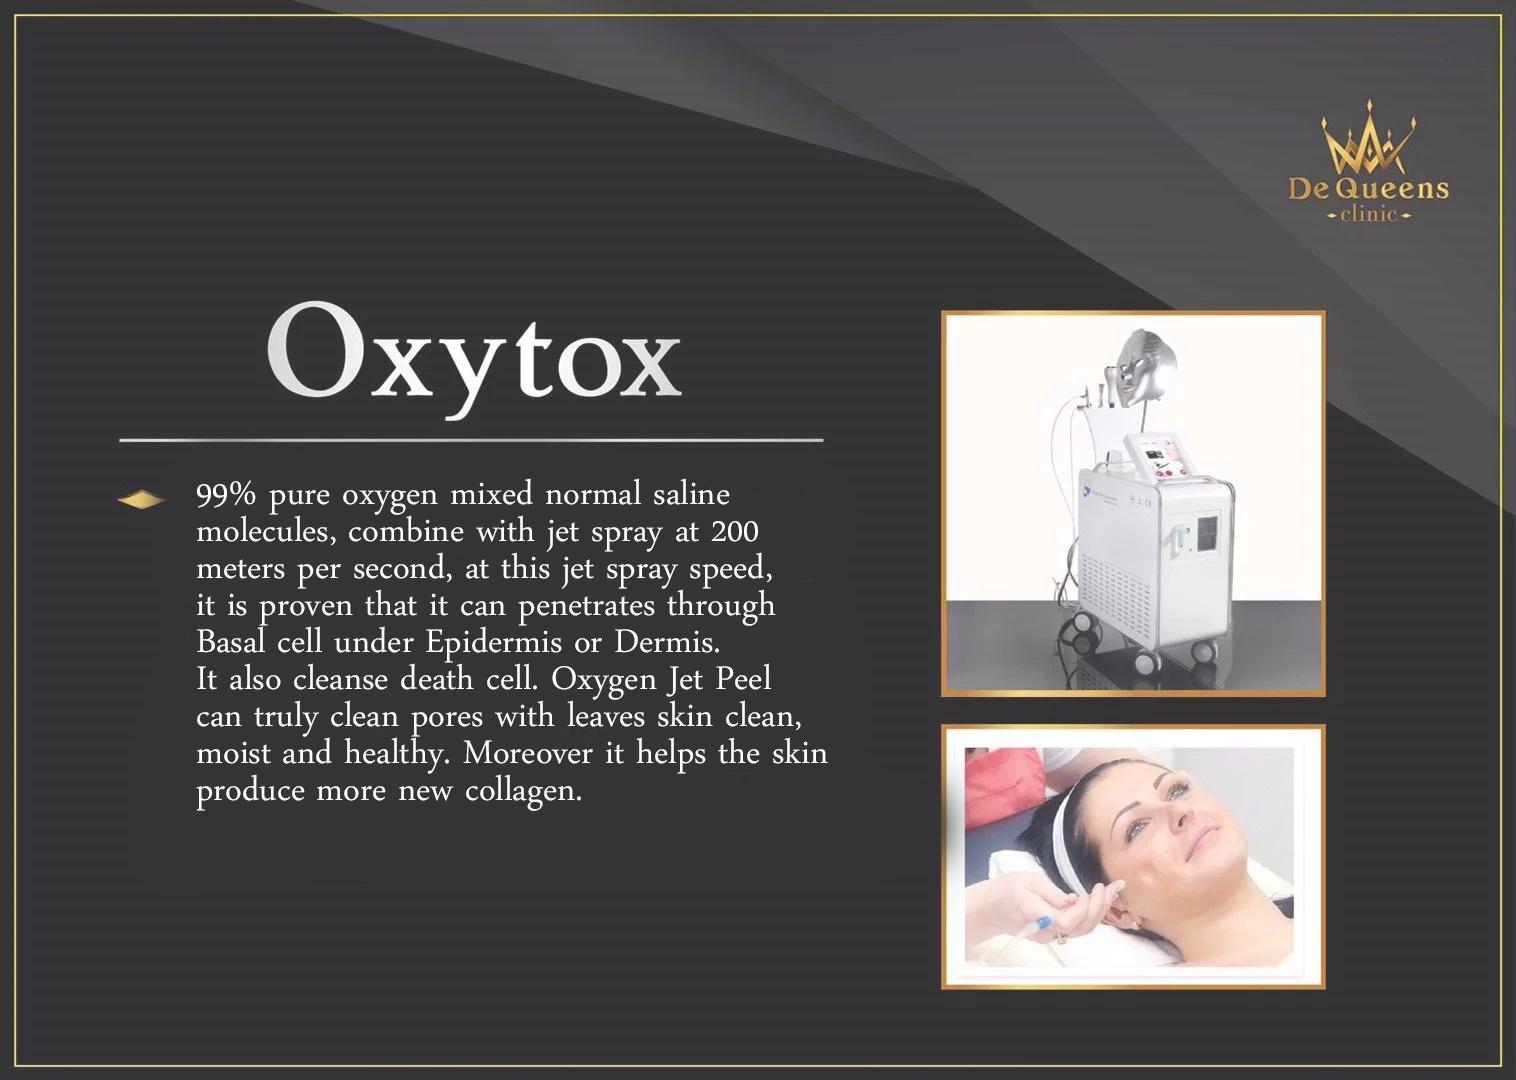 Oxytox